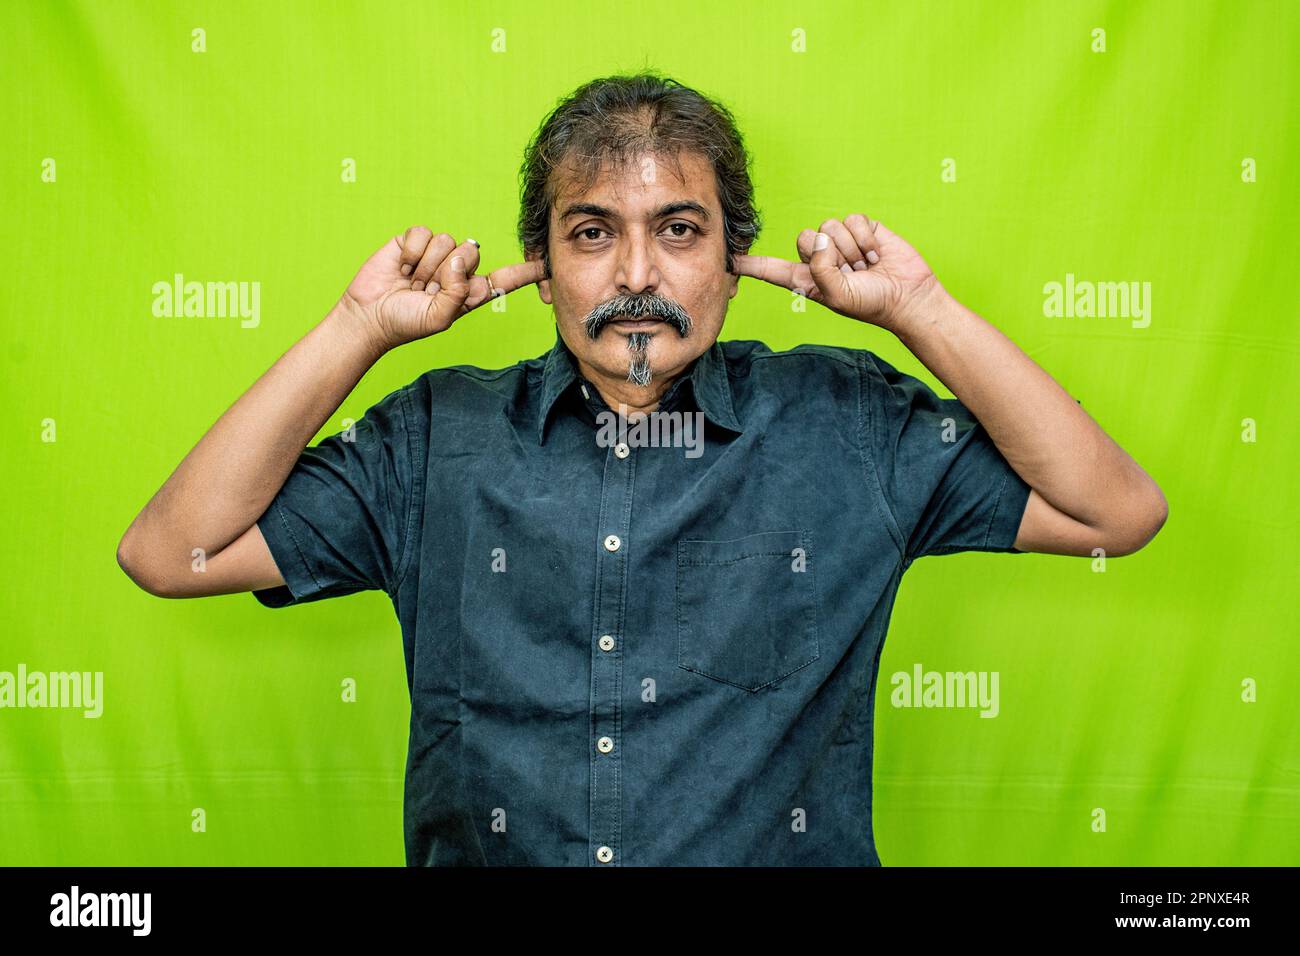 Un uomo d'affari ben vestito che indossa una camicia nera si trova contro uno schermo verde, coprendo entrambe le orecchie con i suoi forefingers, a indicare la sordità Foto Stock